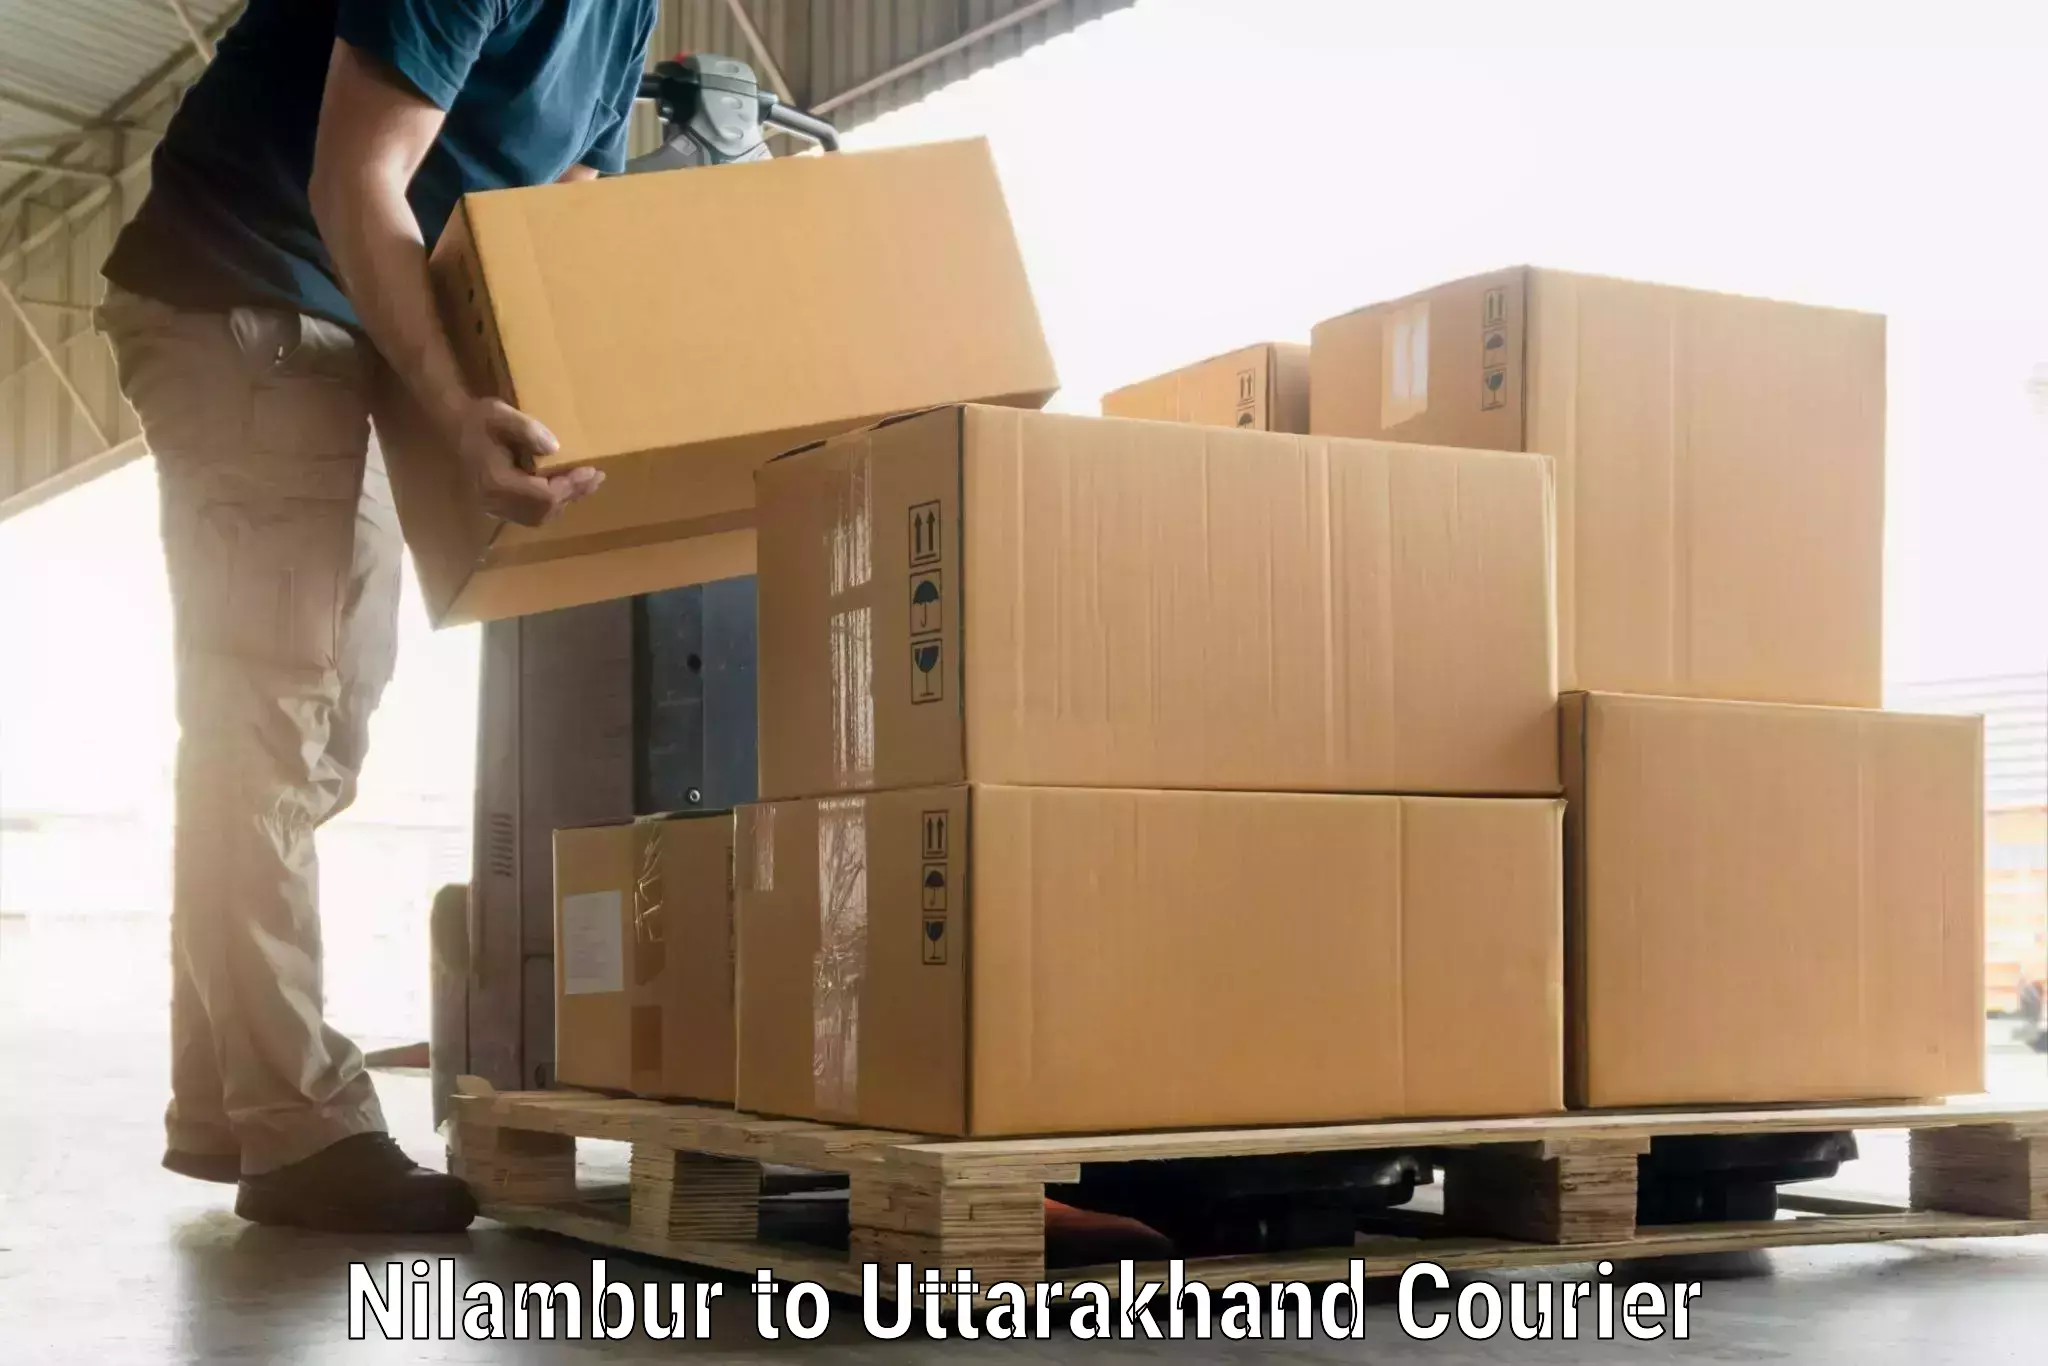 Luggage transport consultancy Nilambur to Rudraprayag